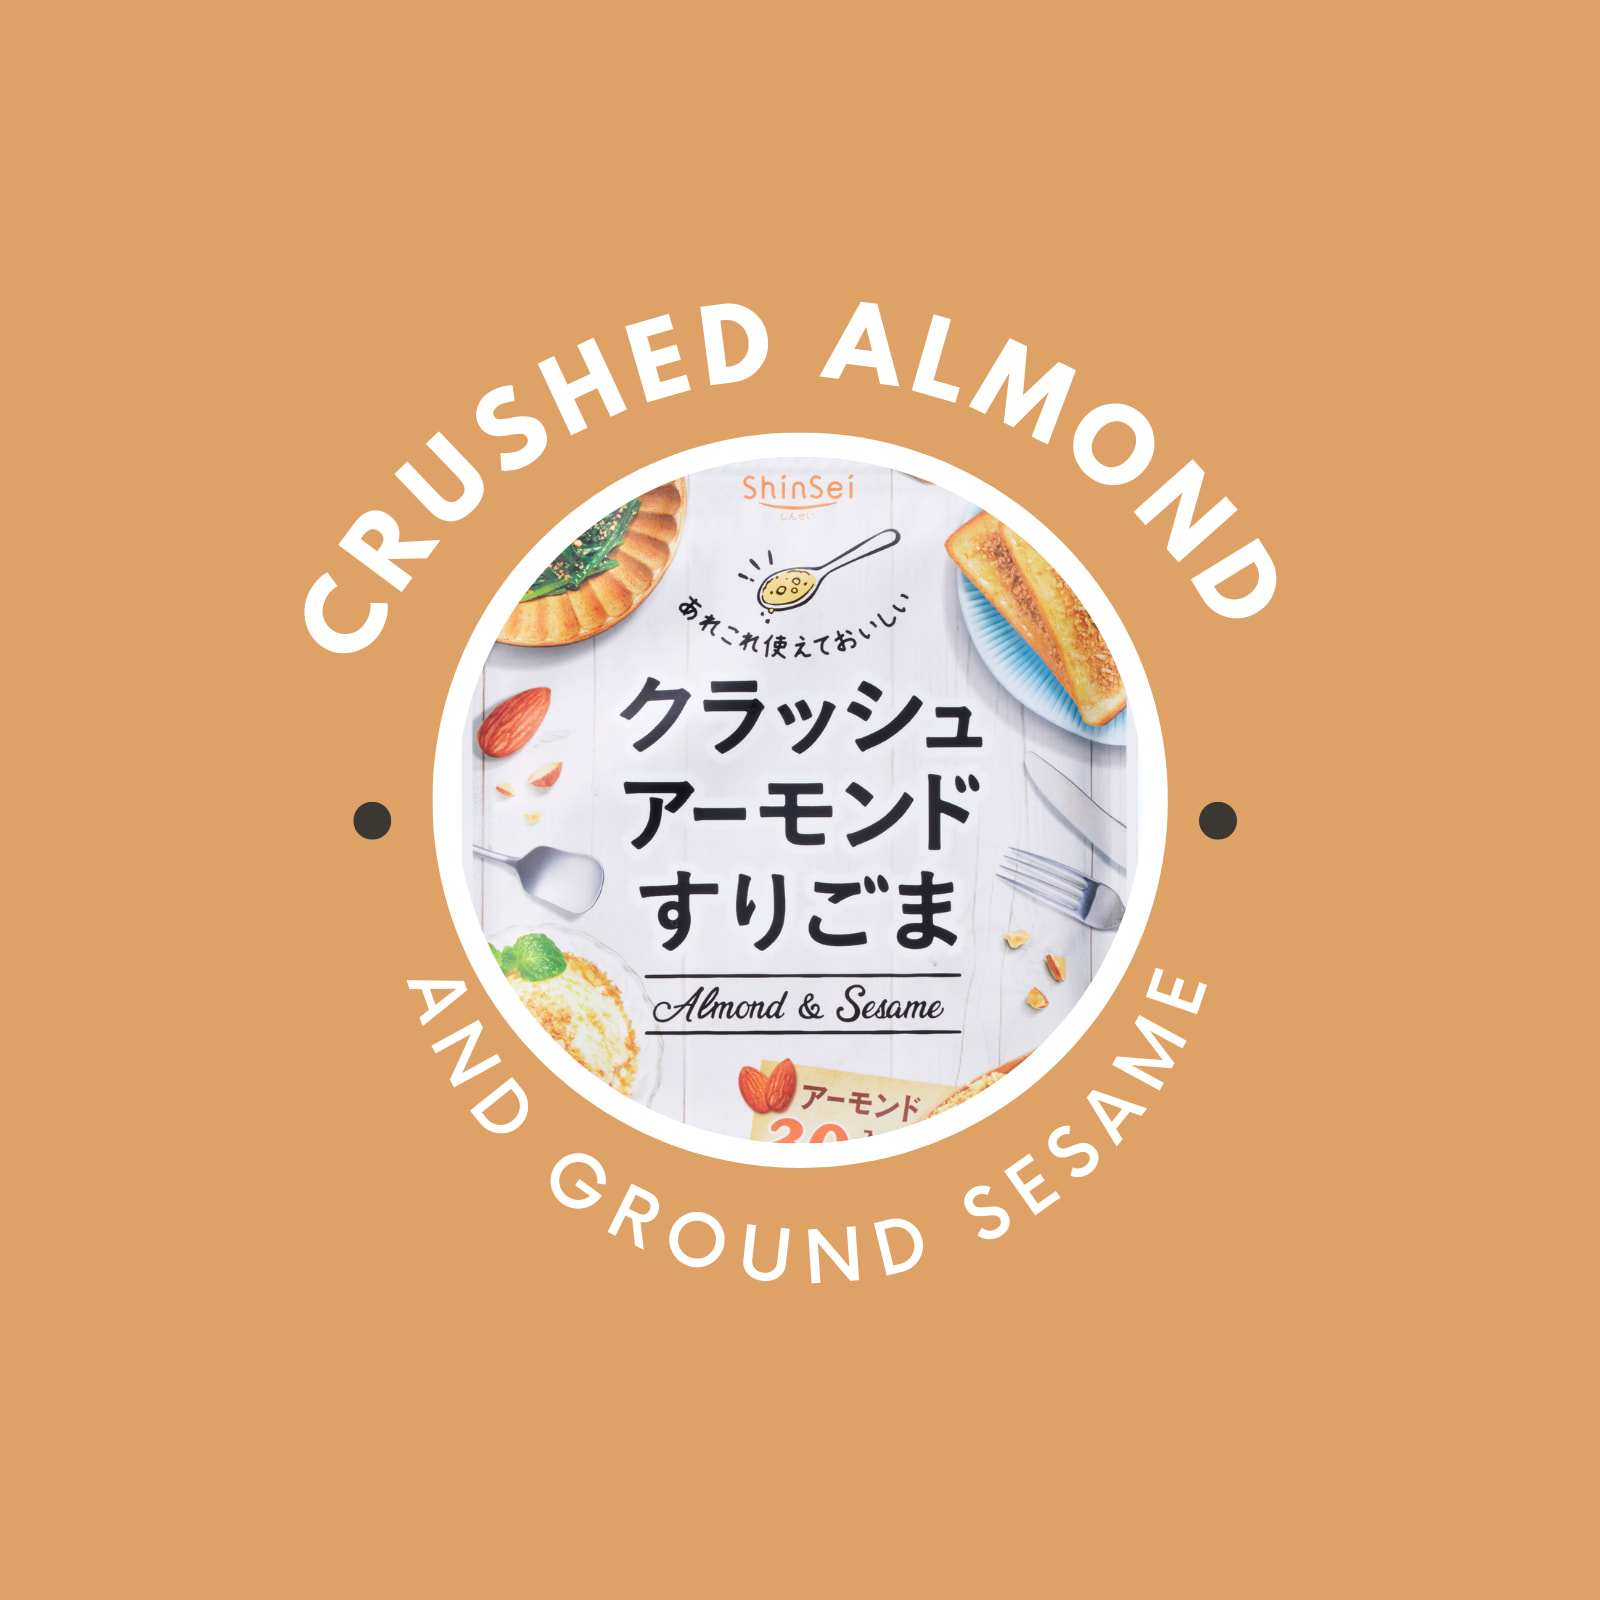 Crushed　Almond　Shotengai　And　Hinode　Mix　Ground　50g　Sesame　⭐　Hinode　Shinsei